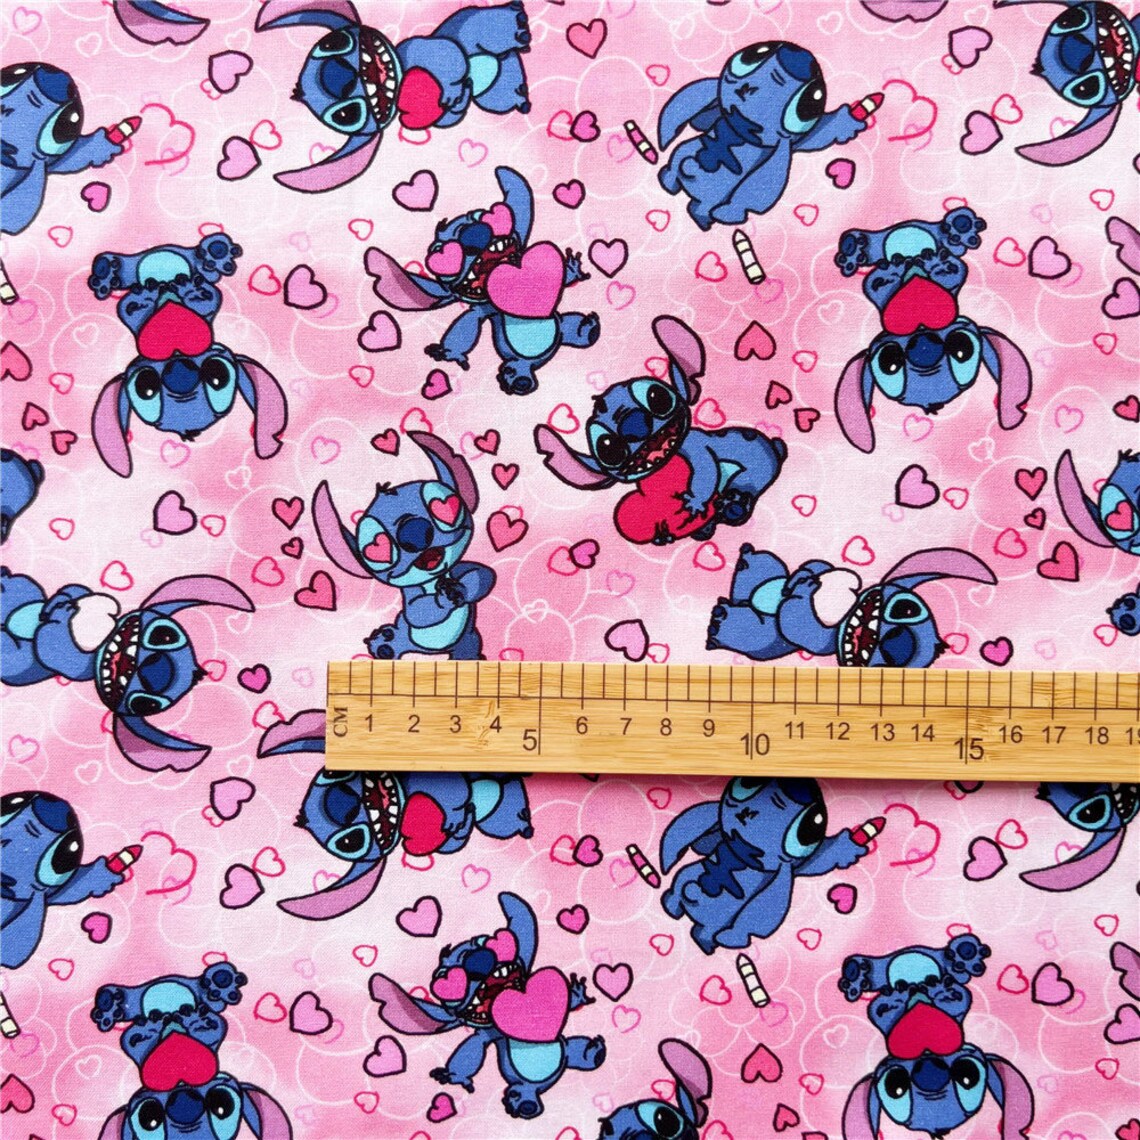 Stitch With Hearts Fabric Lilo and Stitch Fabric Blue Koala - Etsy